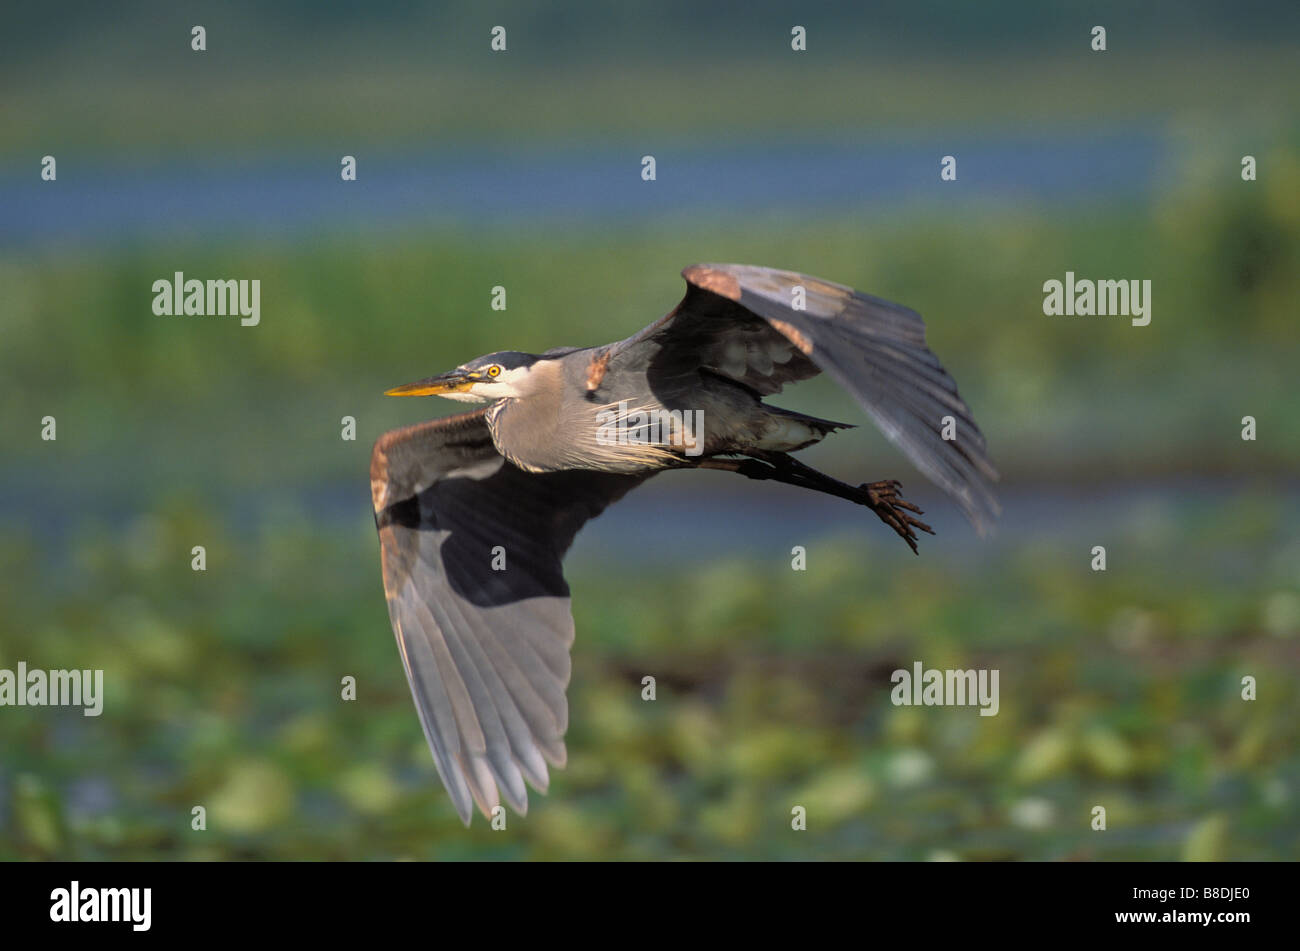 tk0191, Thomas Kitchin; Great Blue Heron Flug Spring Burnaby Lake, British Columbia, Kanada Frühjahr Ardea herodias Stockfoto